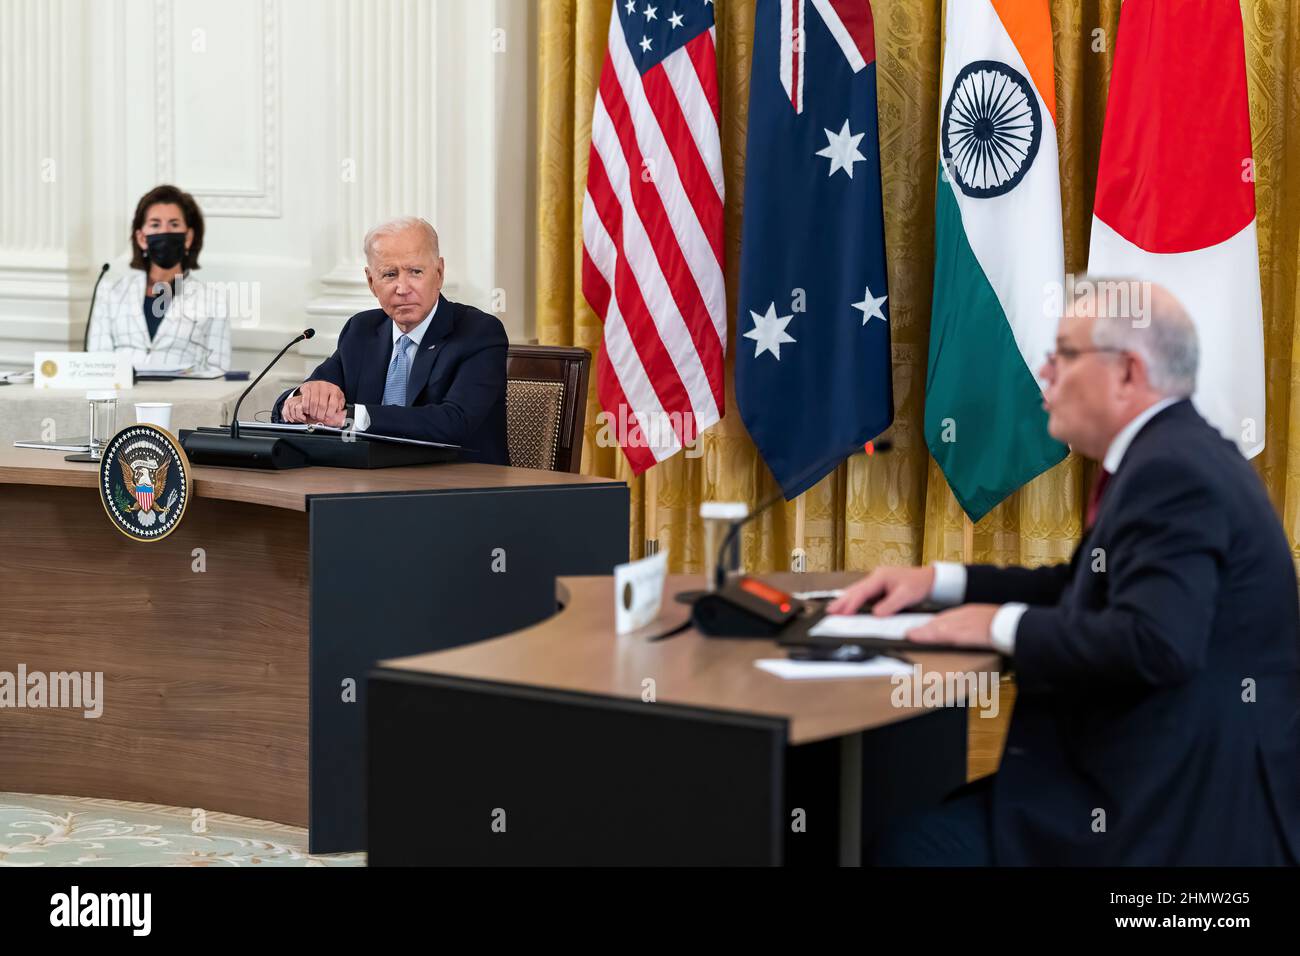 Präsident Joe Biden hört dem australischen Premierminister Scott Morrison während des Quad Leaders’ Summit am Freitag, den 24. September 2021, im East Room des Weißen Hauses zu. (Offizielles Foto des Weißen Hauses von Adam Schultz) Stockfoto